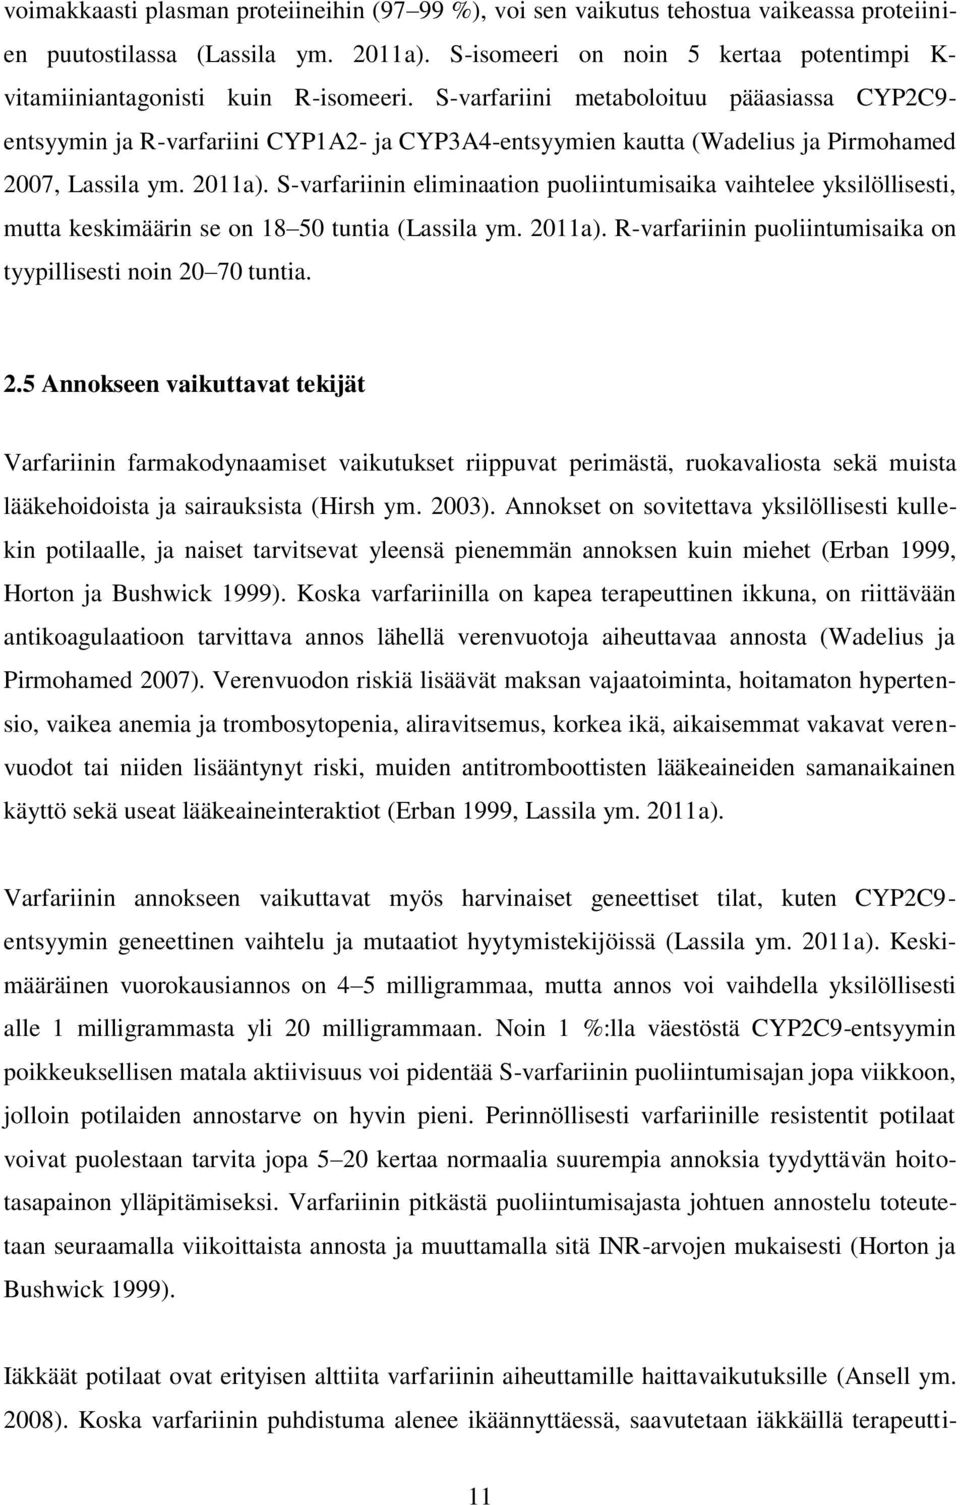 S-varfariini metaboloituu pääasiassa CYP2C9- entsyymin ja R-varfariini CYP1A2- ja CYP3A4-entsyymien kautta (Wadelius ja Pirmohamed 2007, Lassila ym. 2011a).